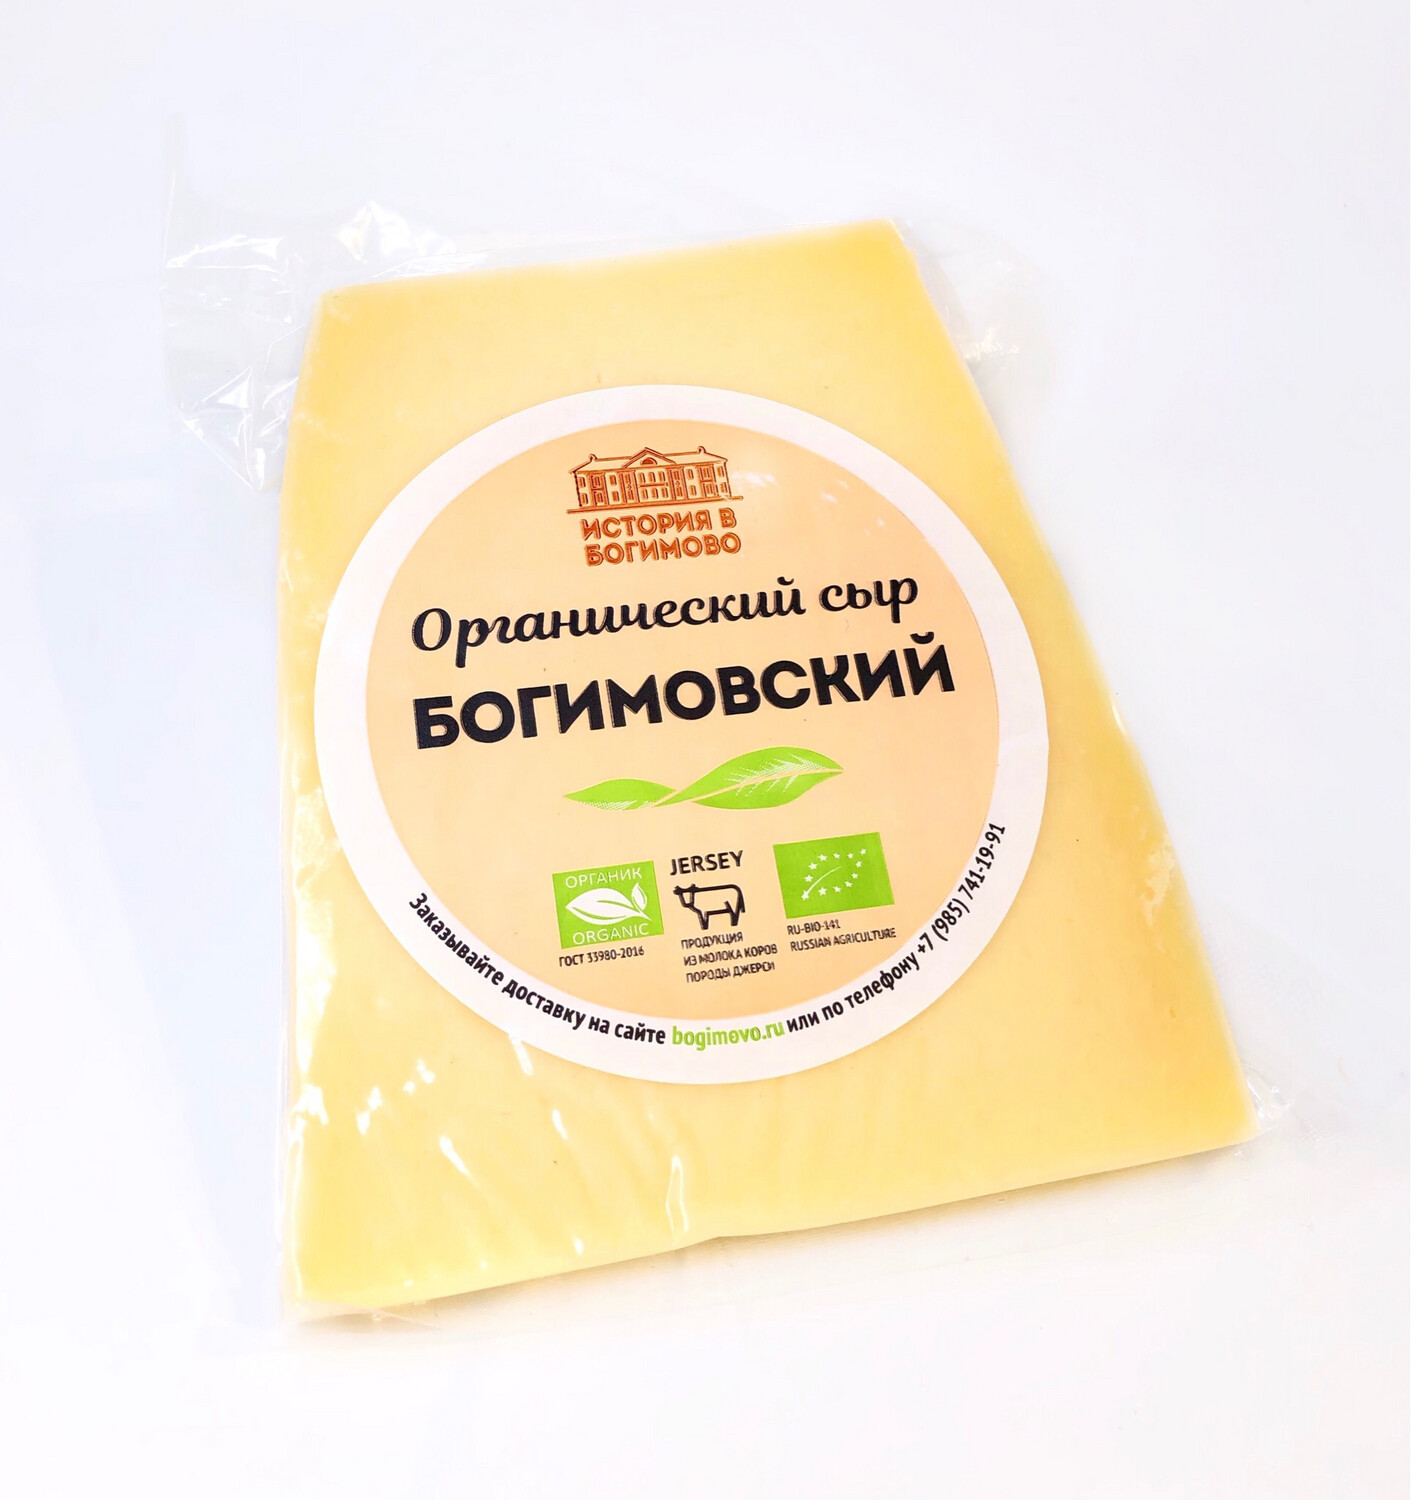 Органический сыр Богимовский (Цена за 300 г)